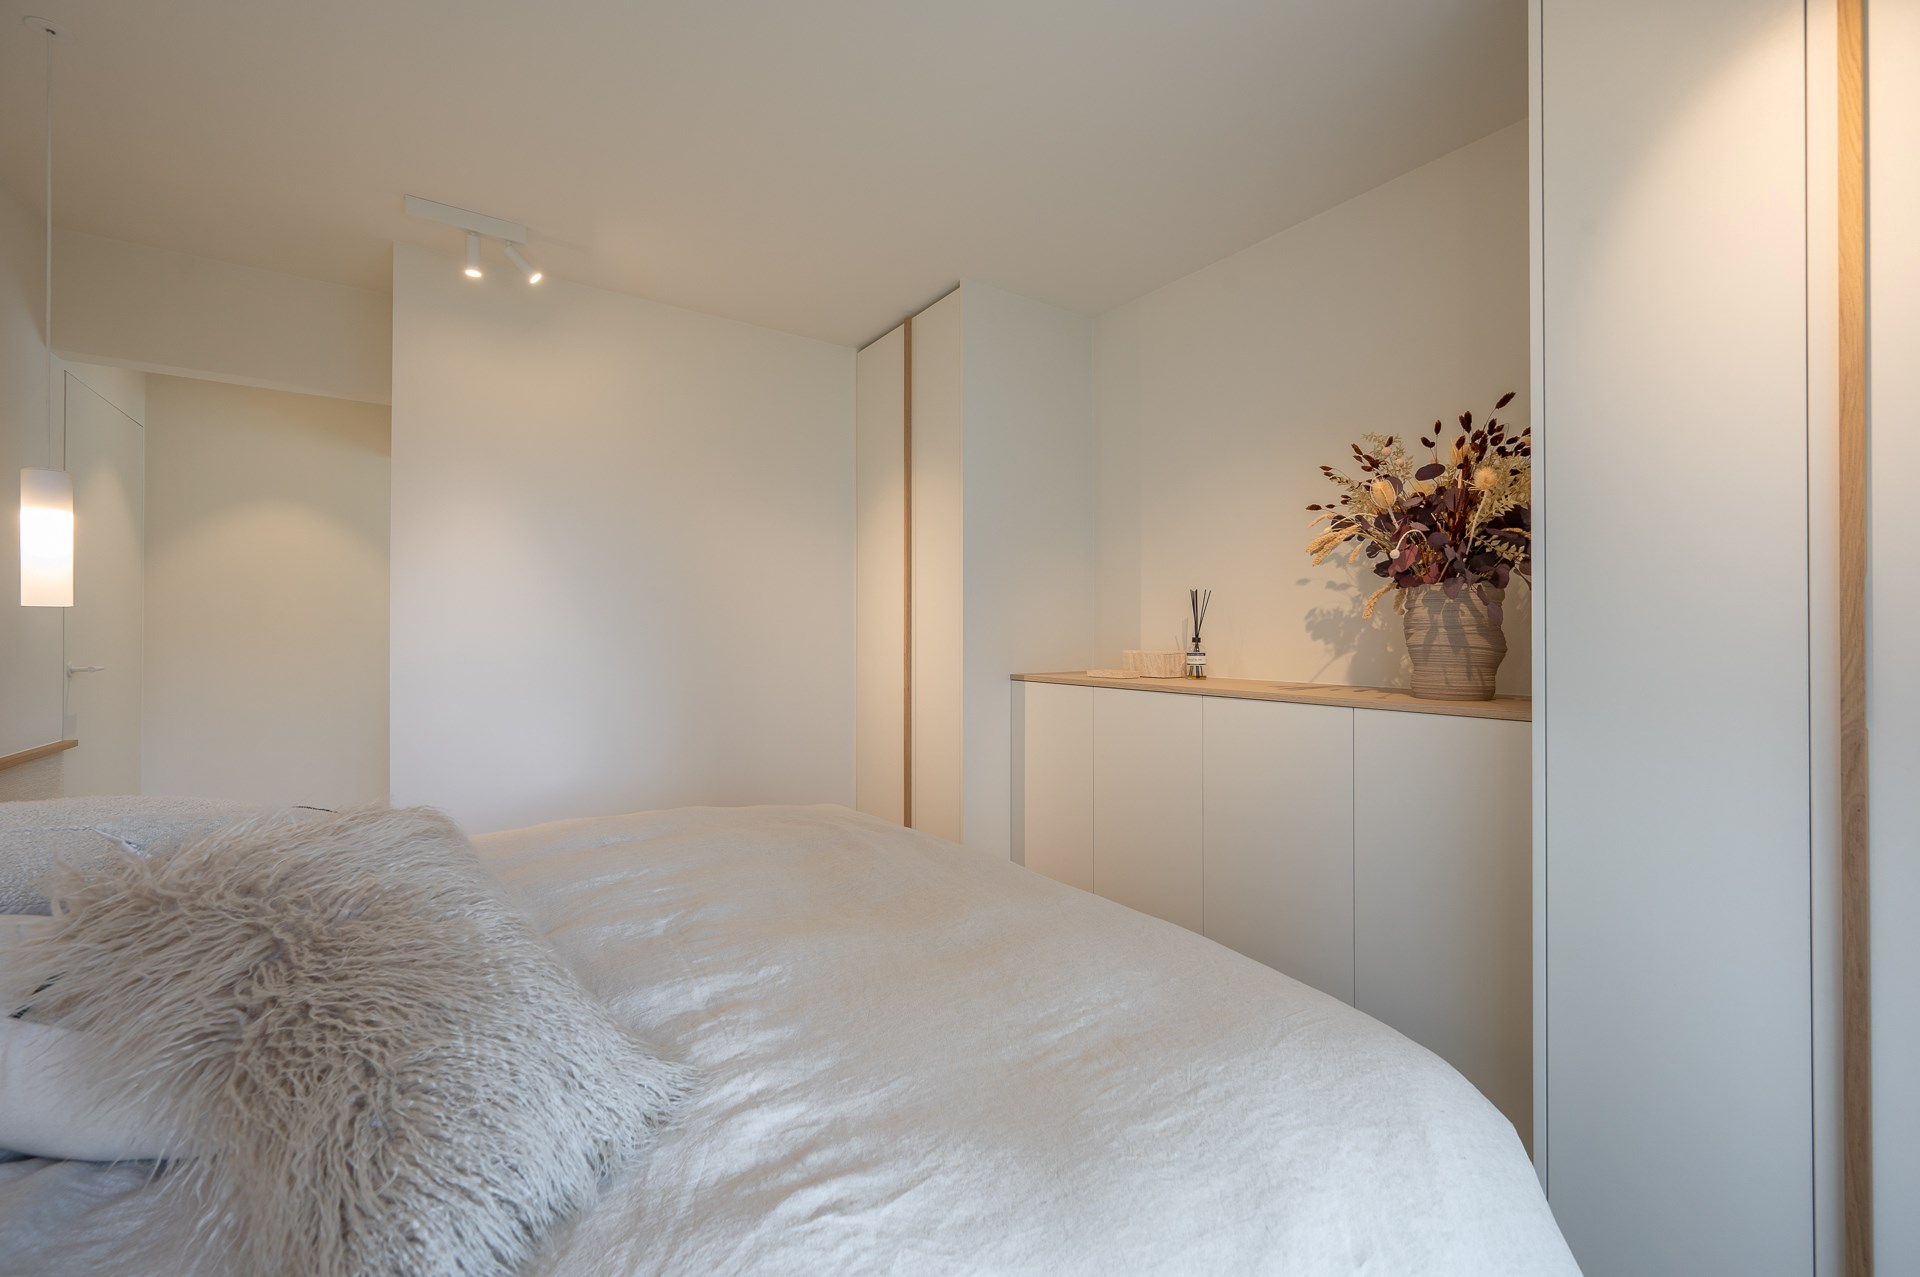 Stijlvol en luxueus gerenoveerd gelijkvloers appartement met twee slaapkamers gelegen op enkele minuten van het strand te Duinbergen. 